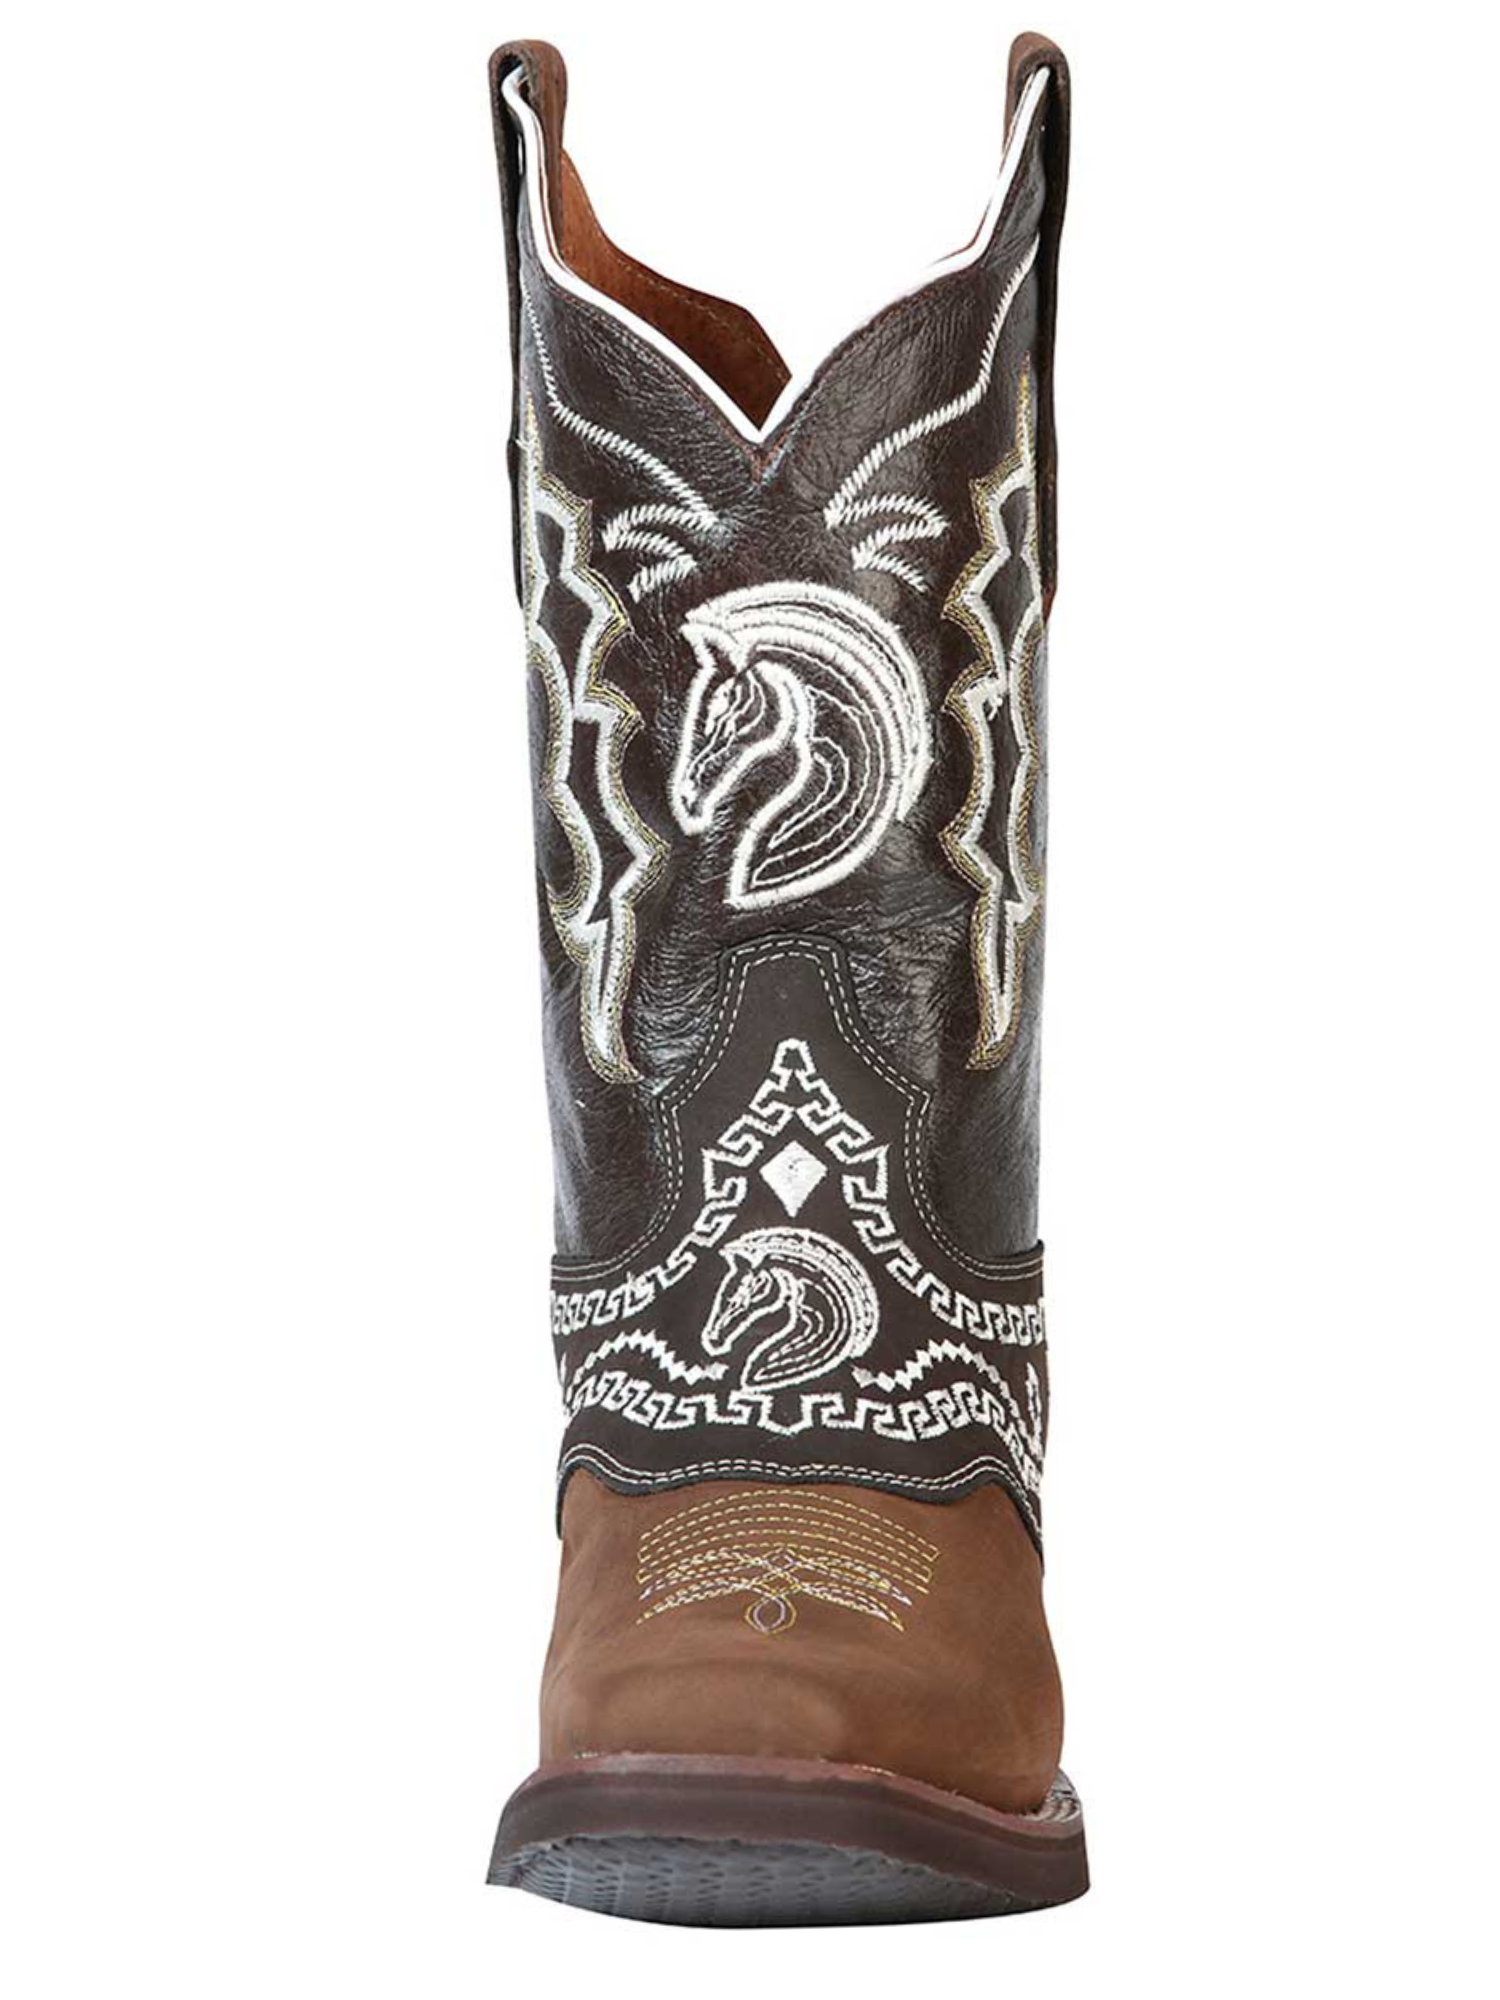 Botas Vaqueras Rodeo con Antifaz Bordado de Piel Genuina para Hombre 'El General' - ID: 51117 Cowboy Boots El General 